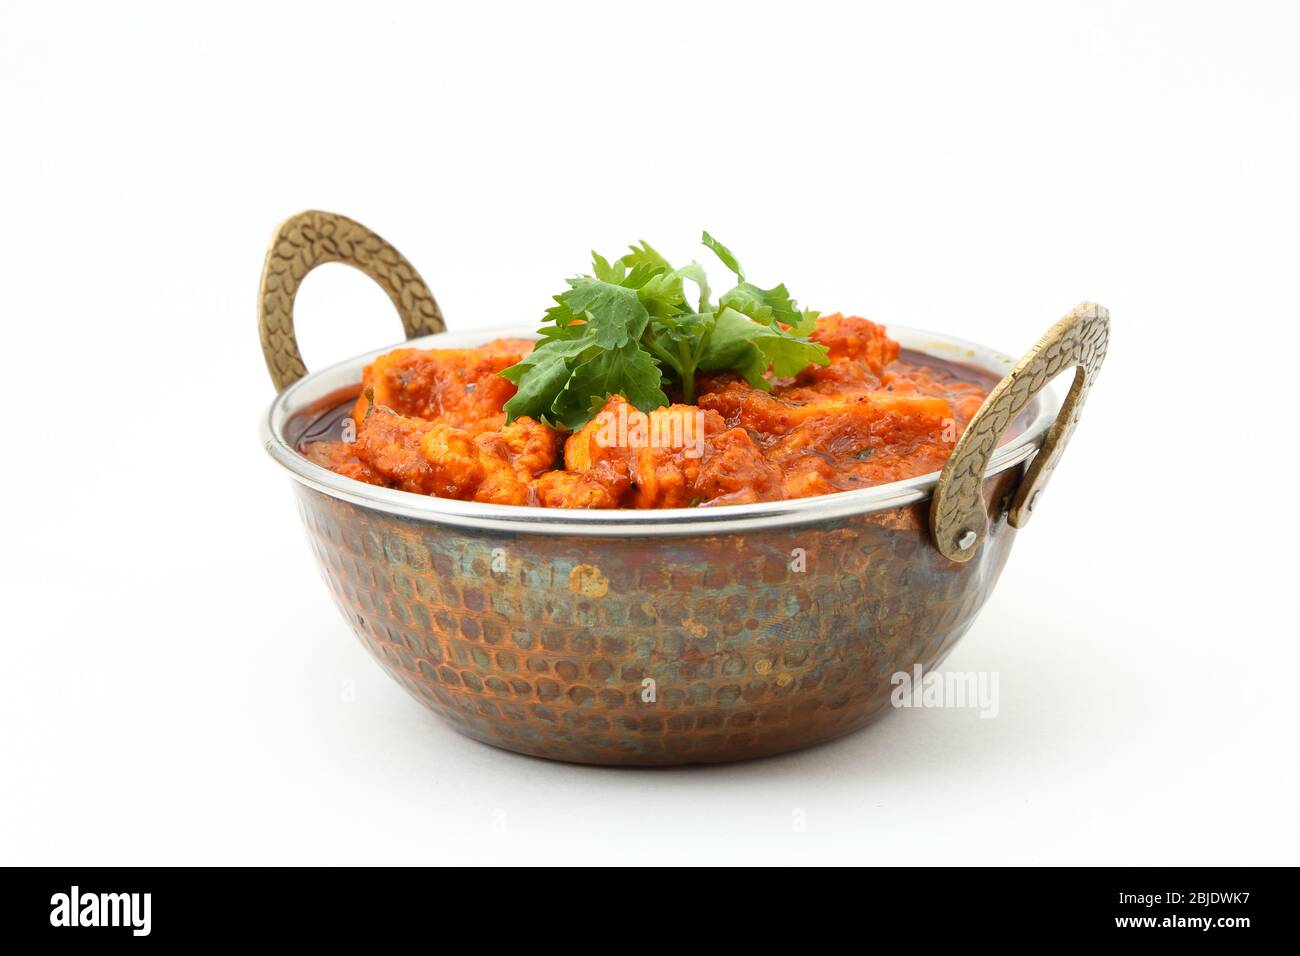 PLAT VÉGÉTARIEN AU CURRY DE FROMAGE COTTAGE DE STYLE INDIEN. Kadai Paneer - cuisine indienne traditionnelle Banque D'Images